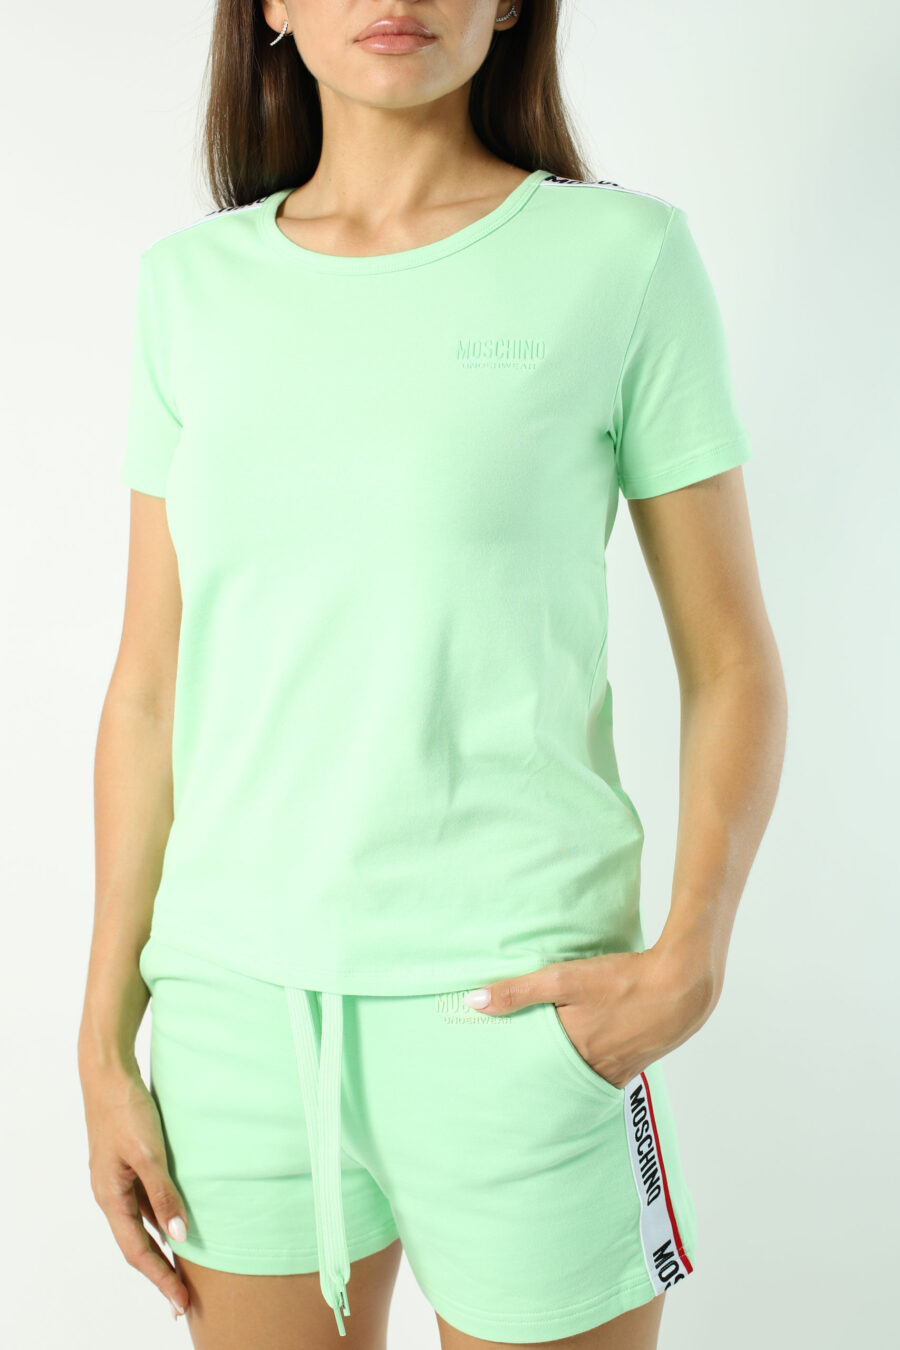 T-shirt verde menta de corte justo com fita com logótipo nos ombros - Fotos 2789